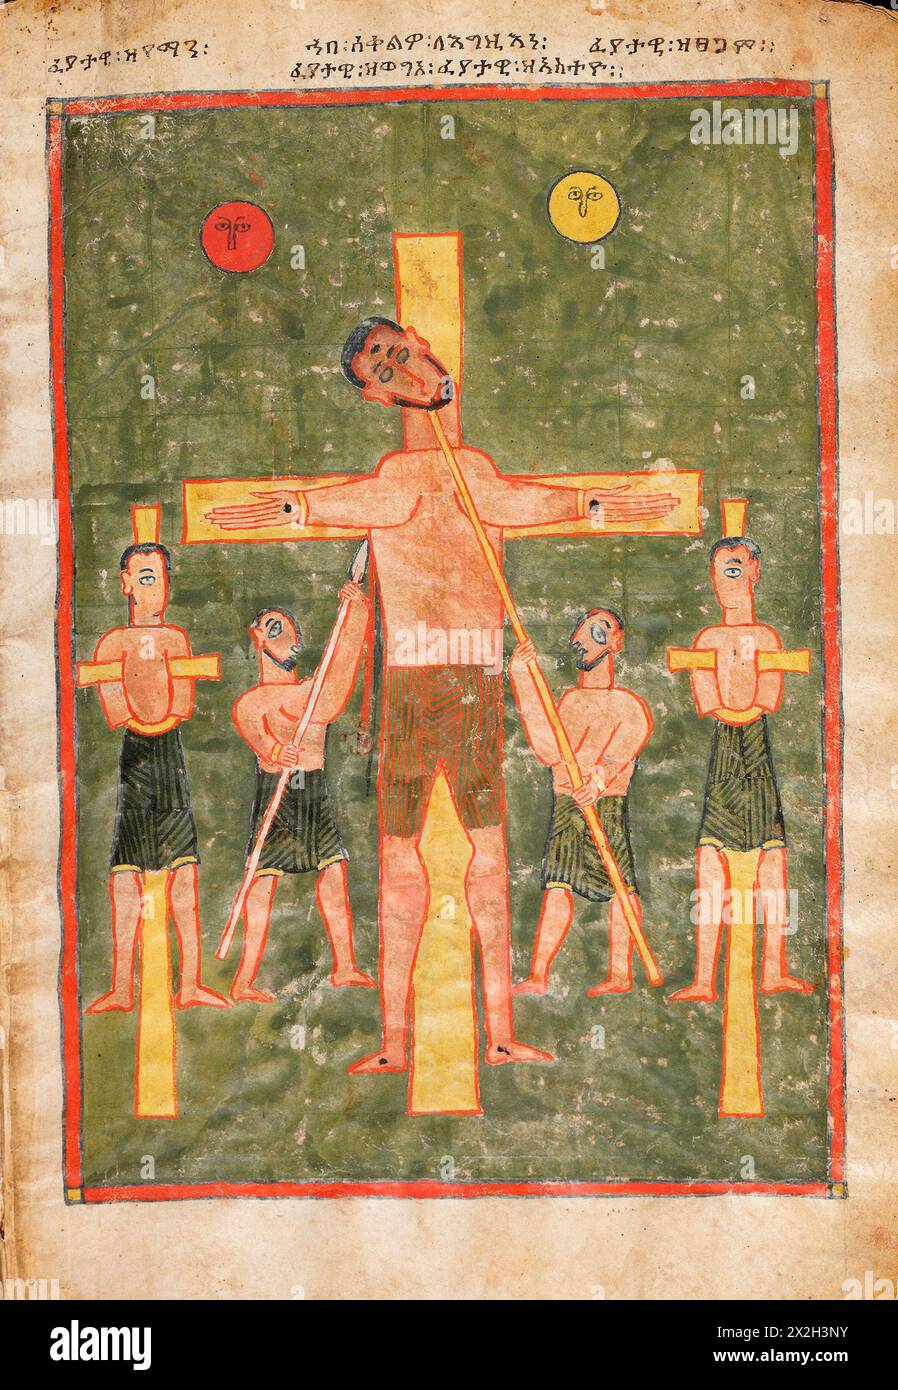 Evangile illuminé - peuples Amhara - la Crucifixion du Christ - fin du XIVe au début du XVe siècle Banque D'Images